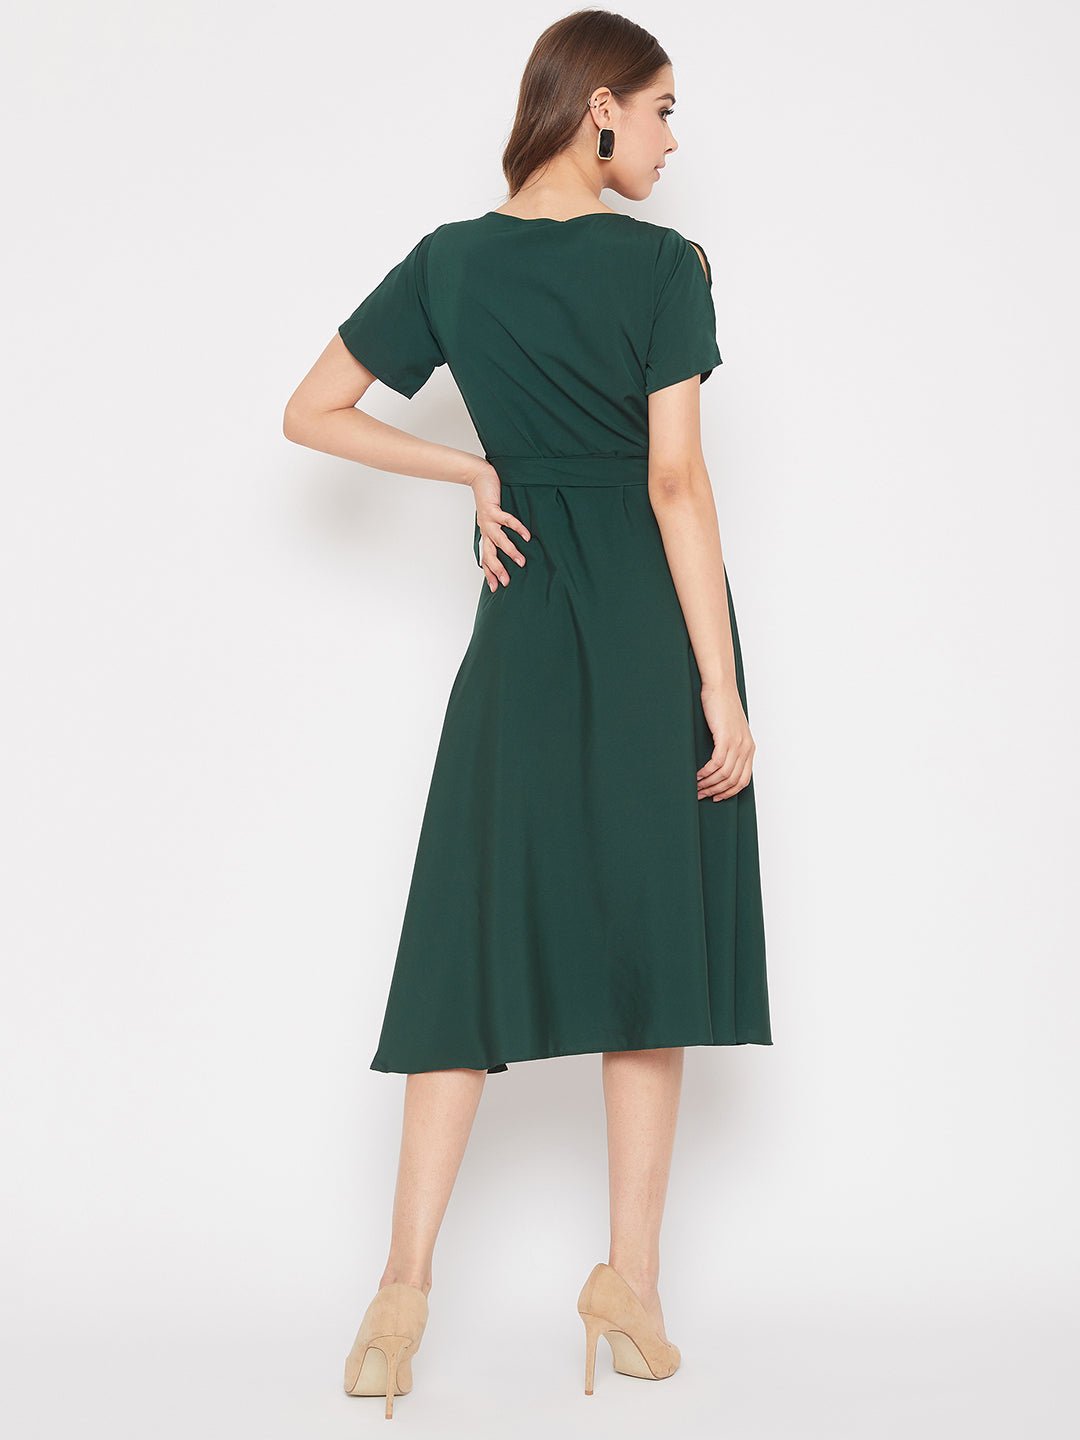 Folk Republic Women Solid Green V-Neck Flared Wrap A-Line Midi Dress - #folk republic#